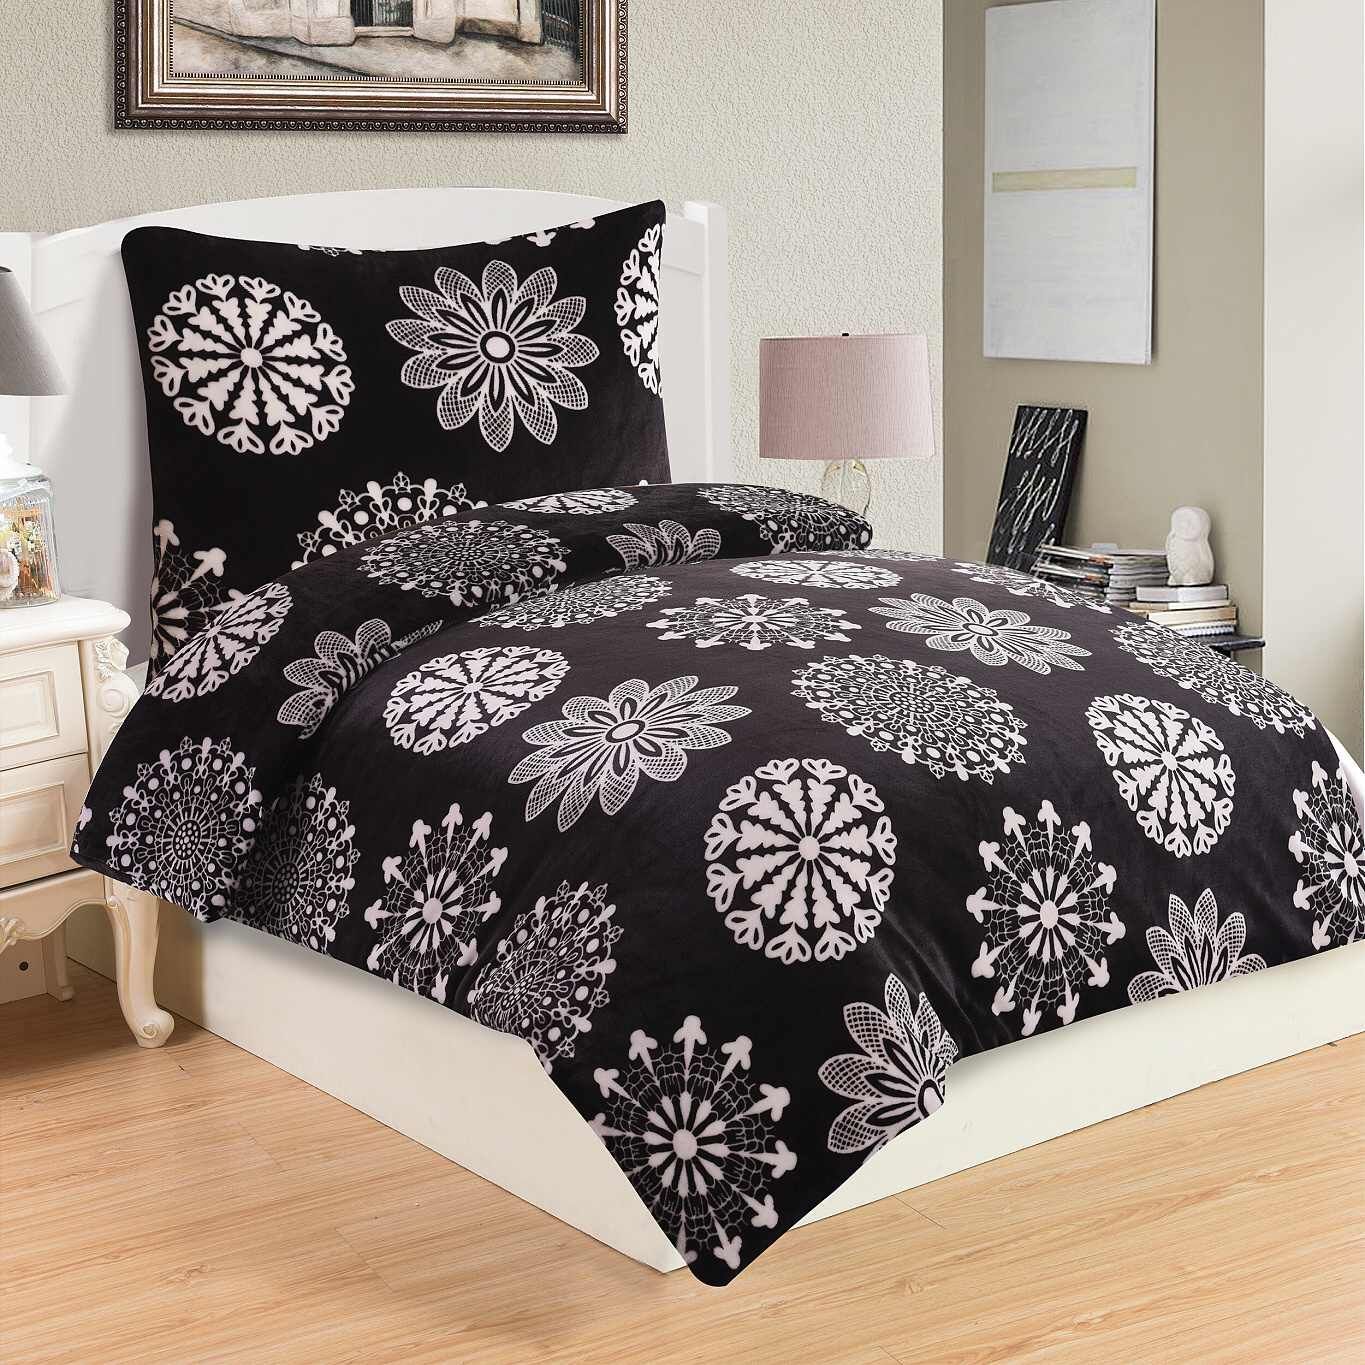 S atraktívnymi ornamenty hrejivé mikroflanelové posteľné obliečky Coco black, Jahu